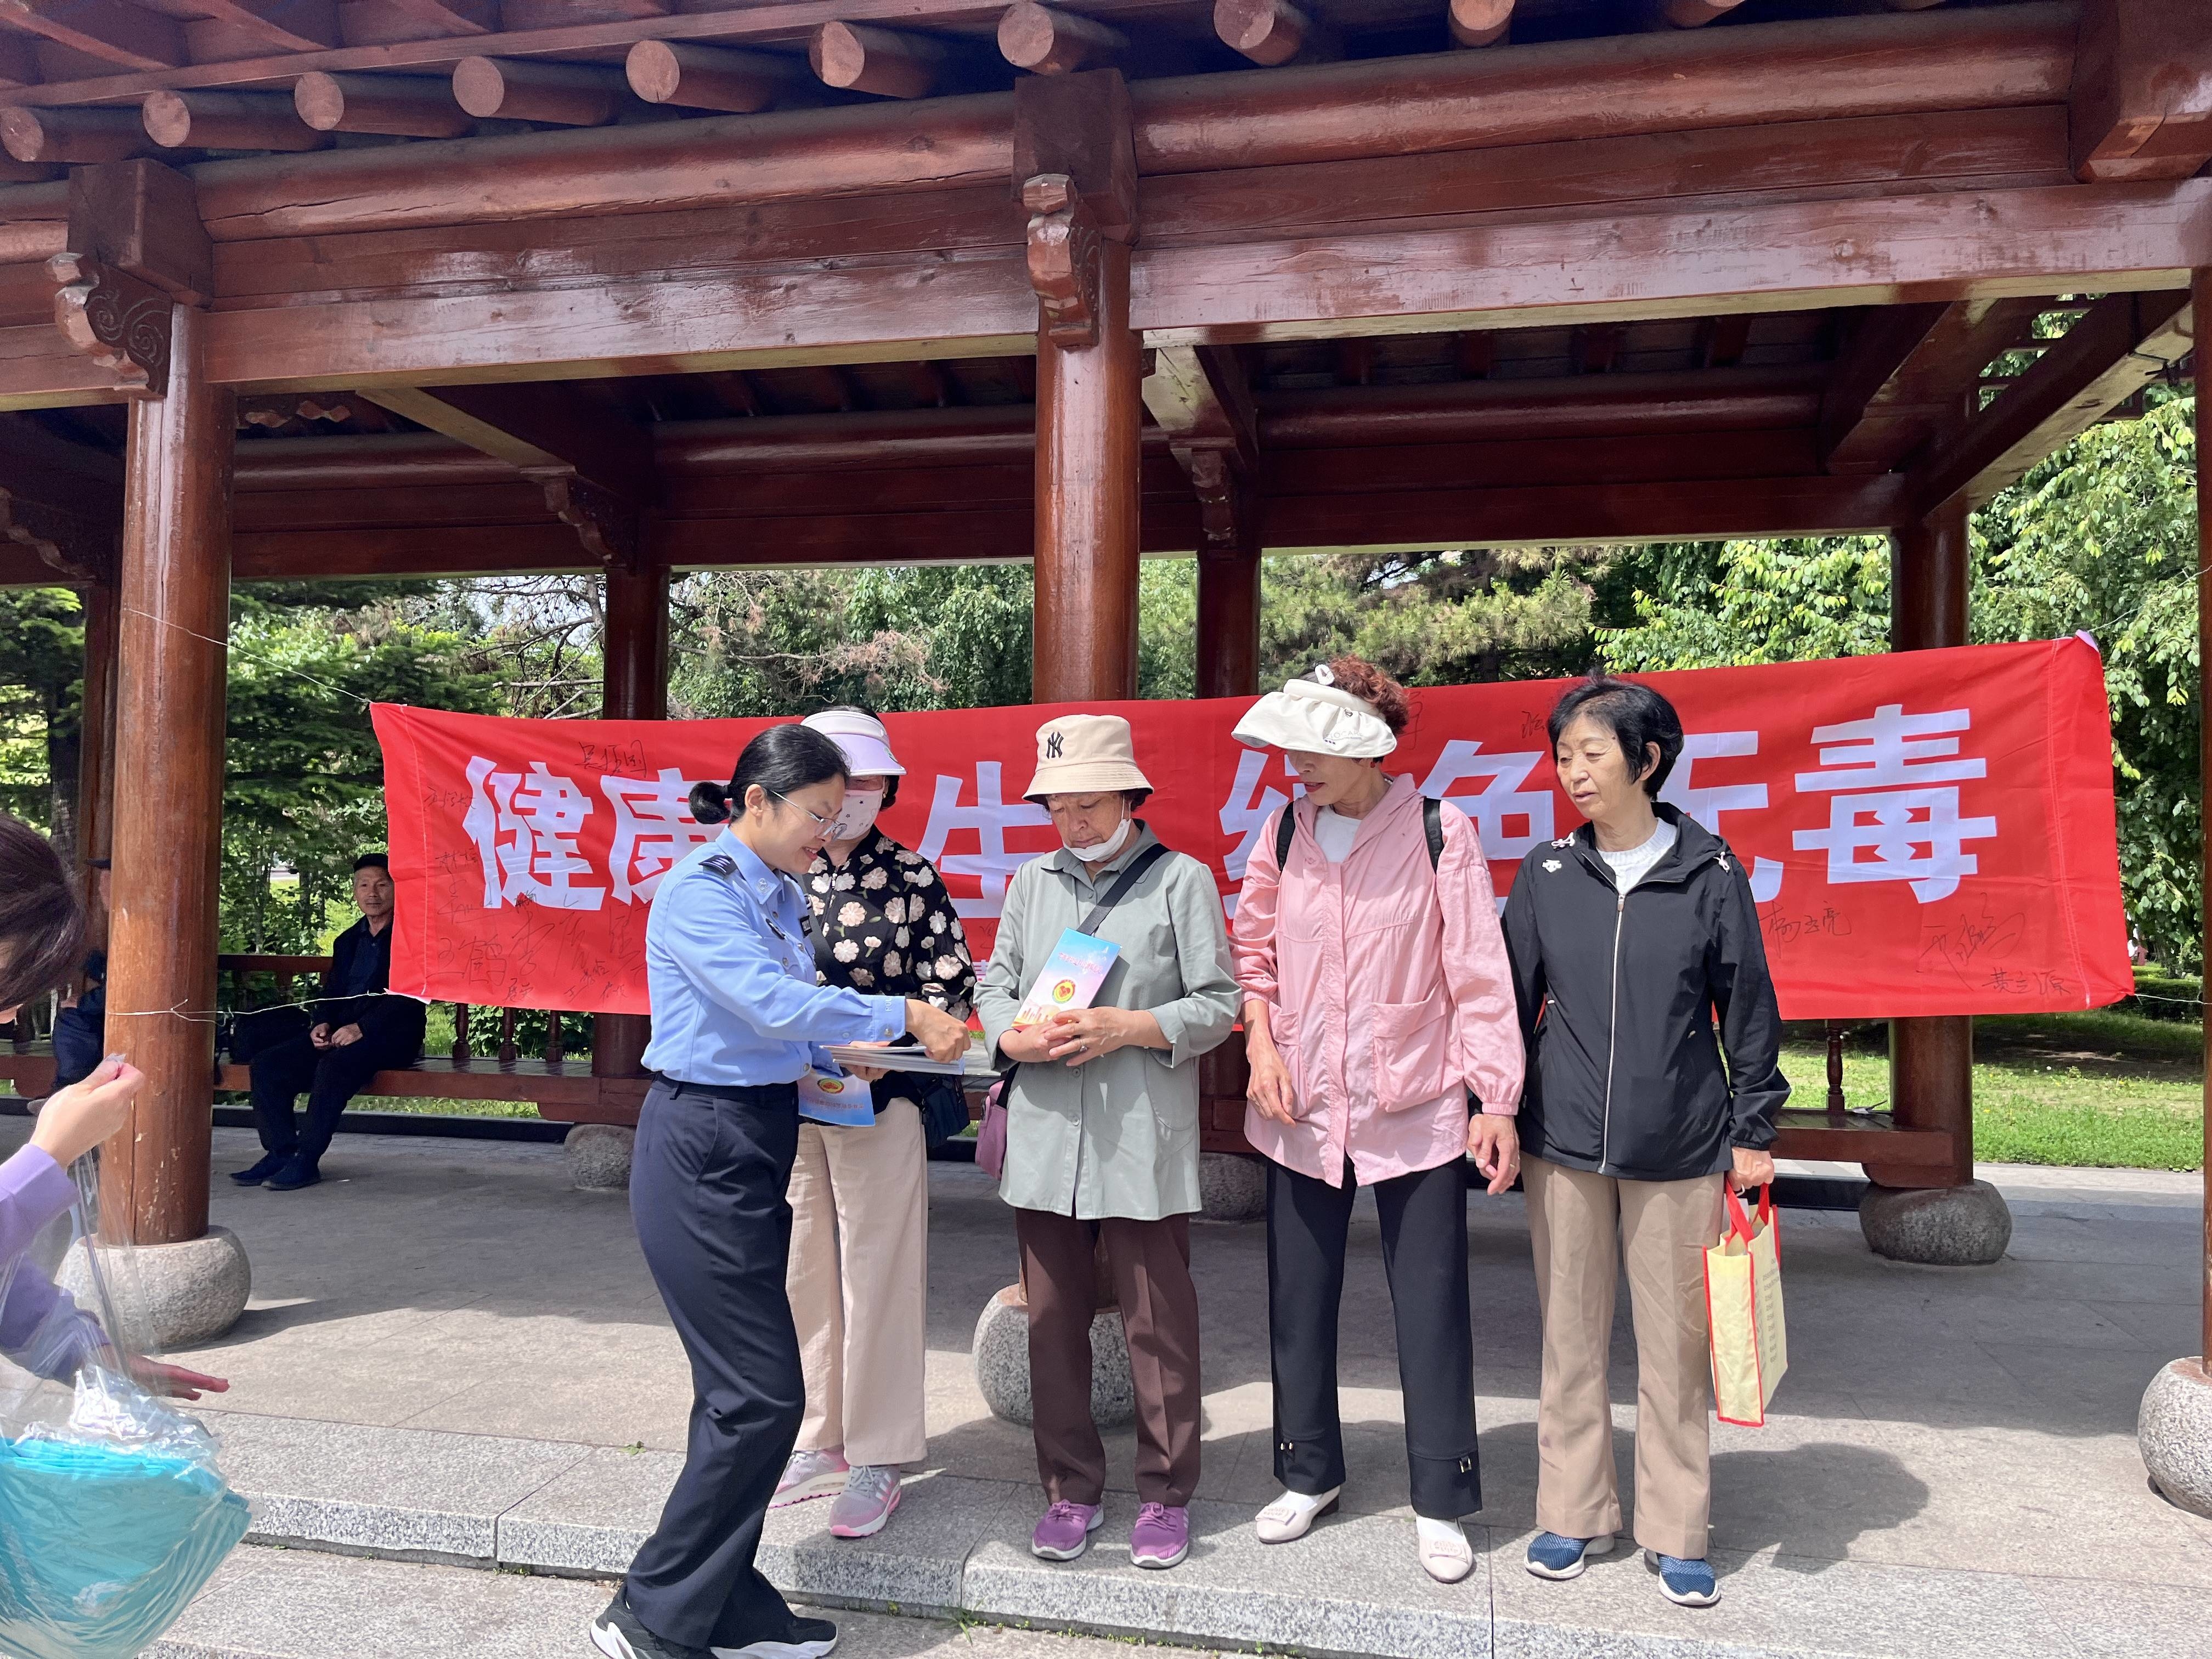 延吉市司法局公园司法所开展“健康人生 绿色无毒”禁毒宣传活动